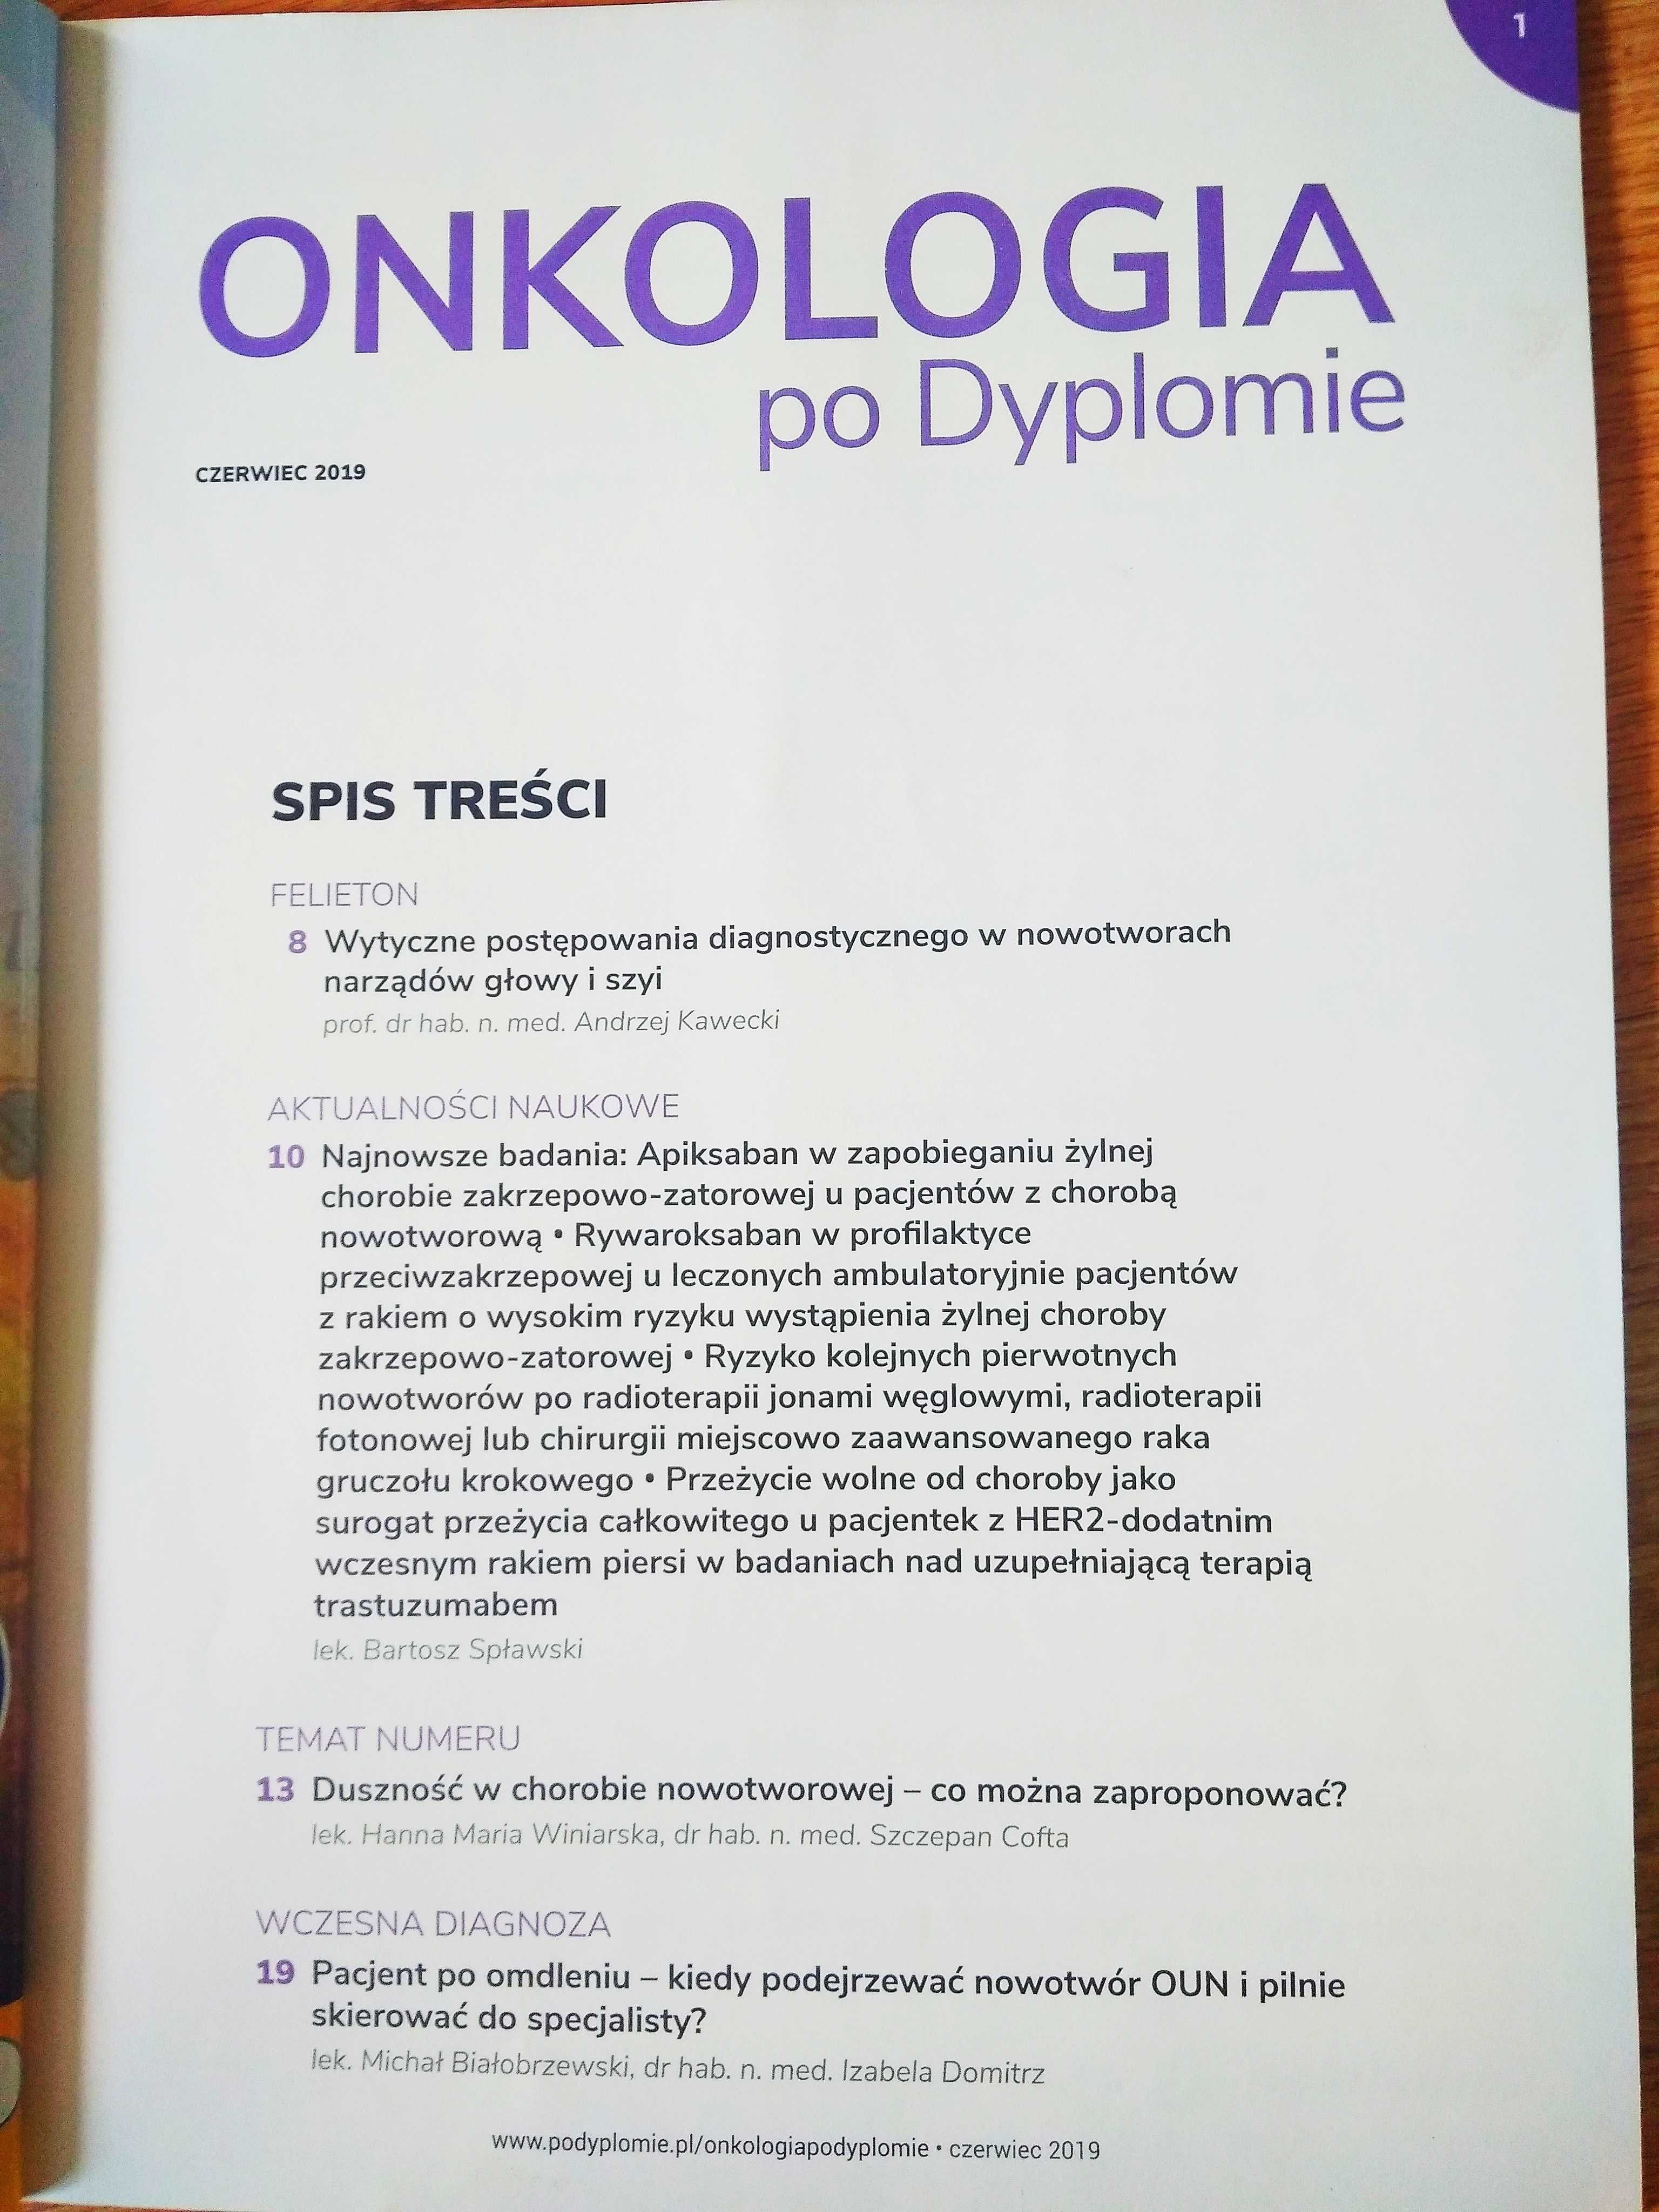 Onkologia po dyplomie nr 3 czerwiec 2019 magazyn Medical Tribune